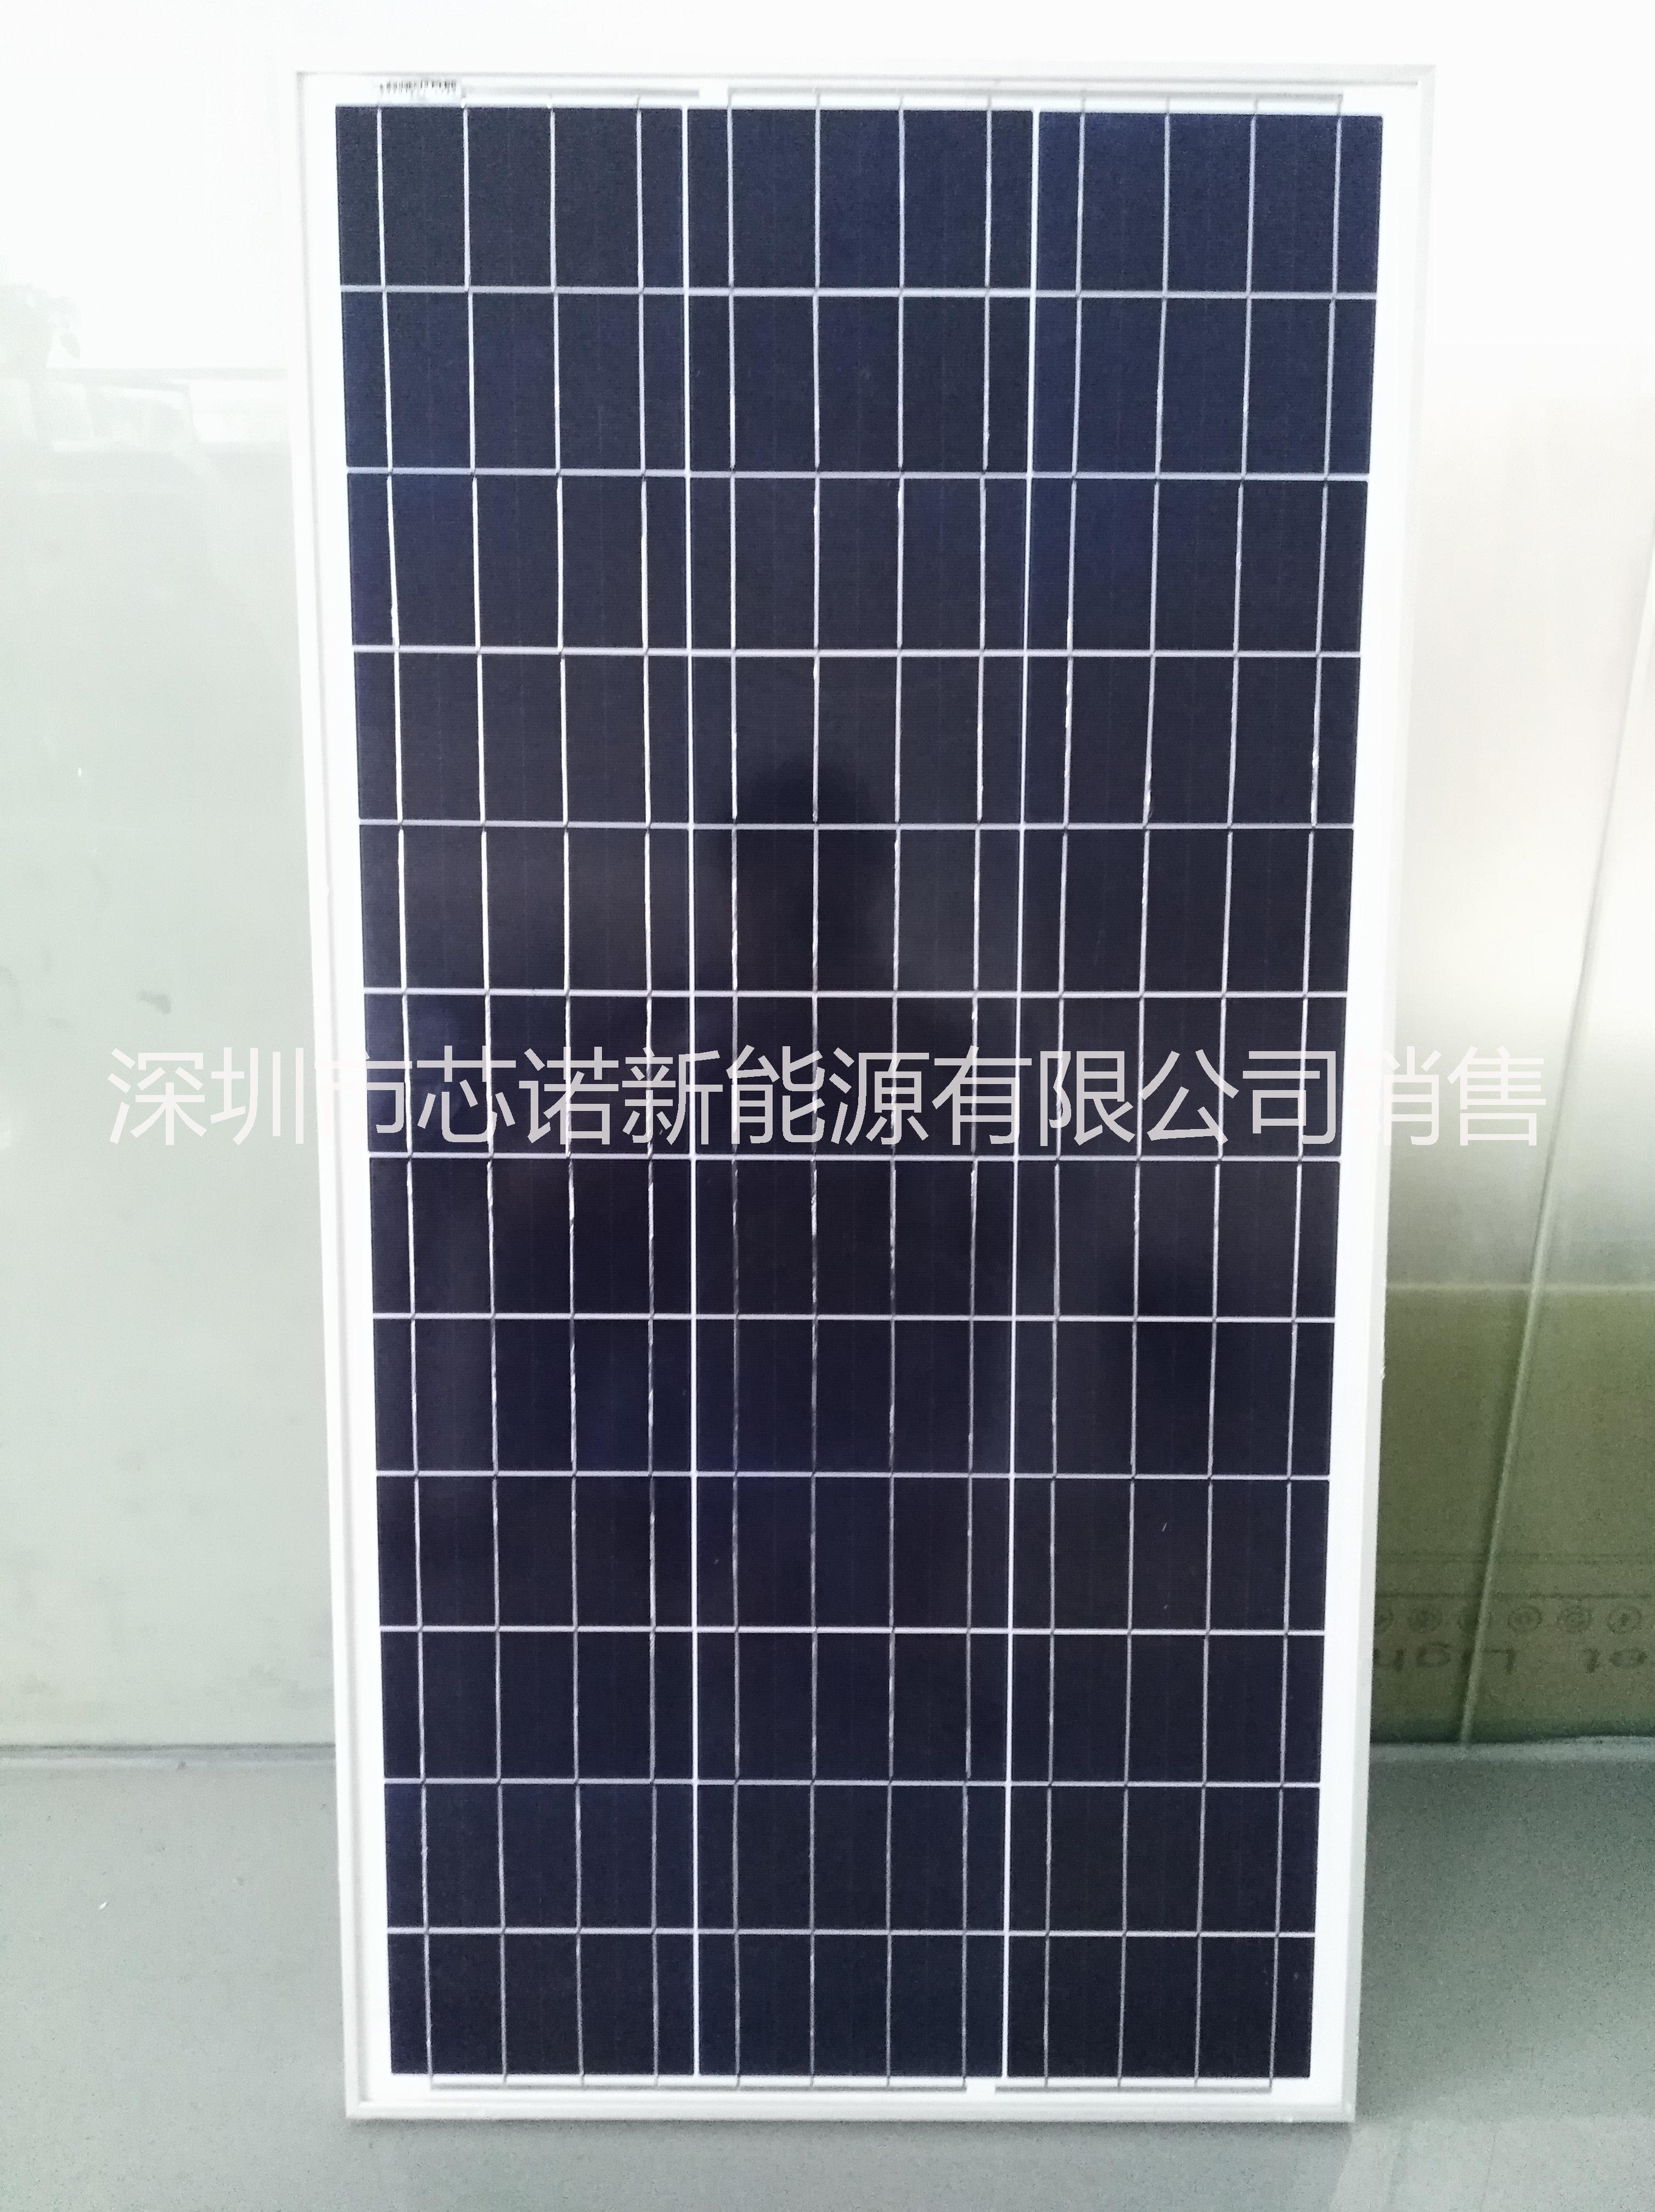 厂家生产多晶30W太阳能板  XN-18V30W-P